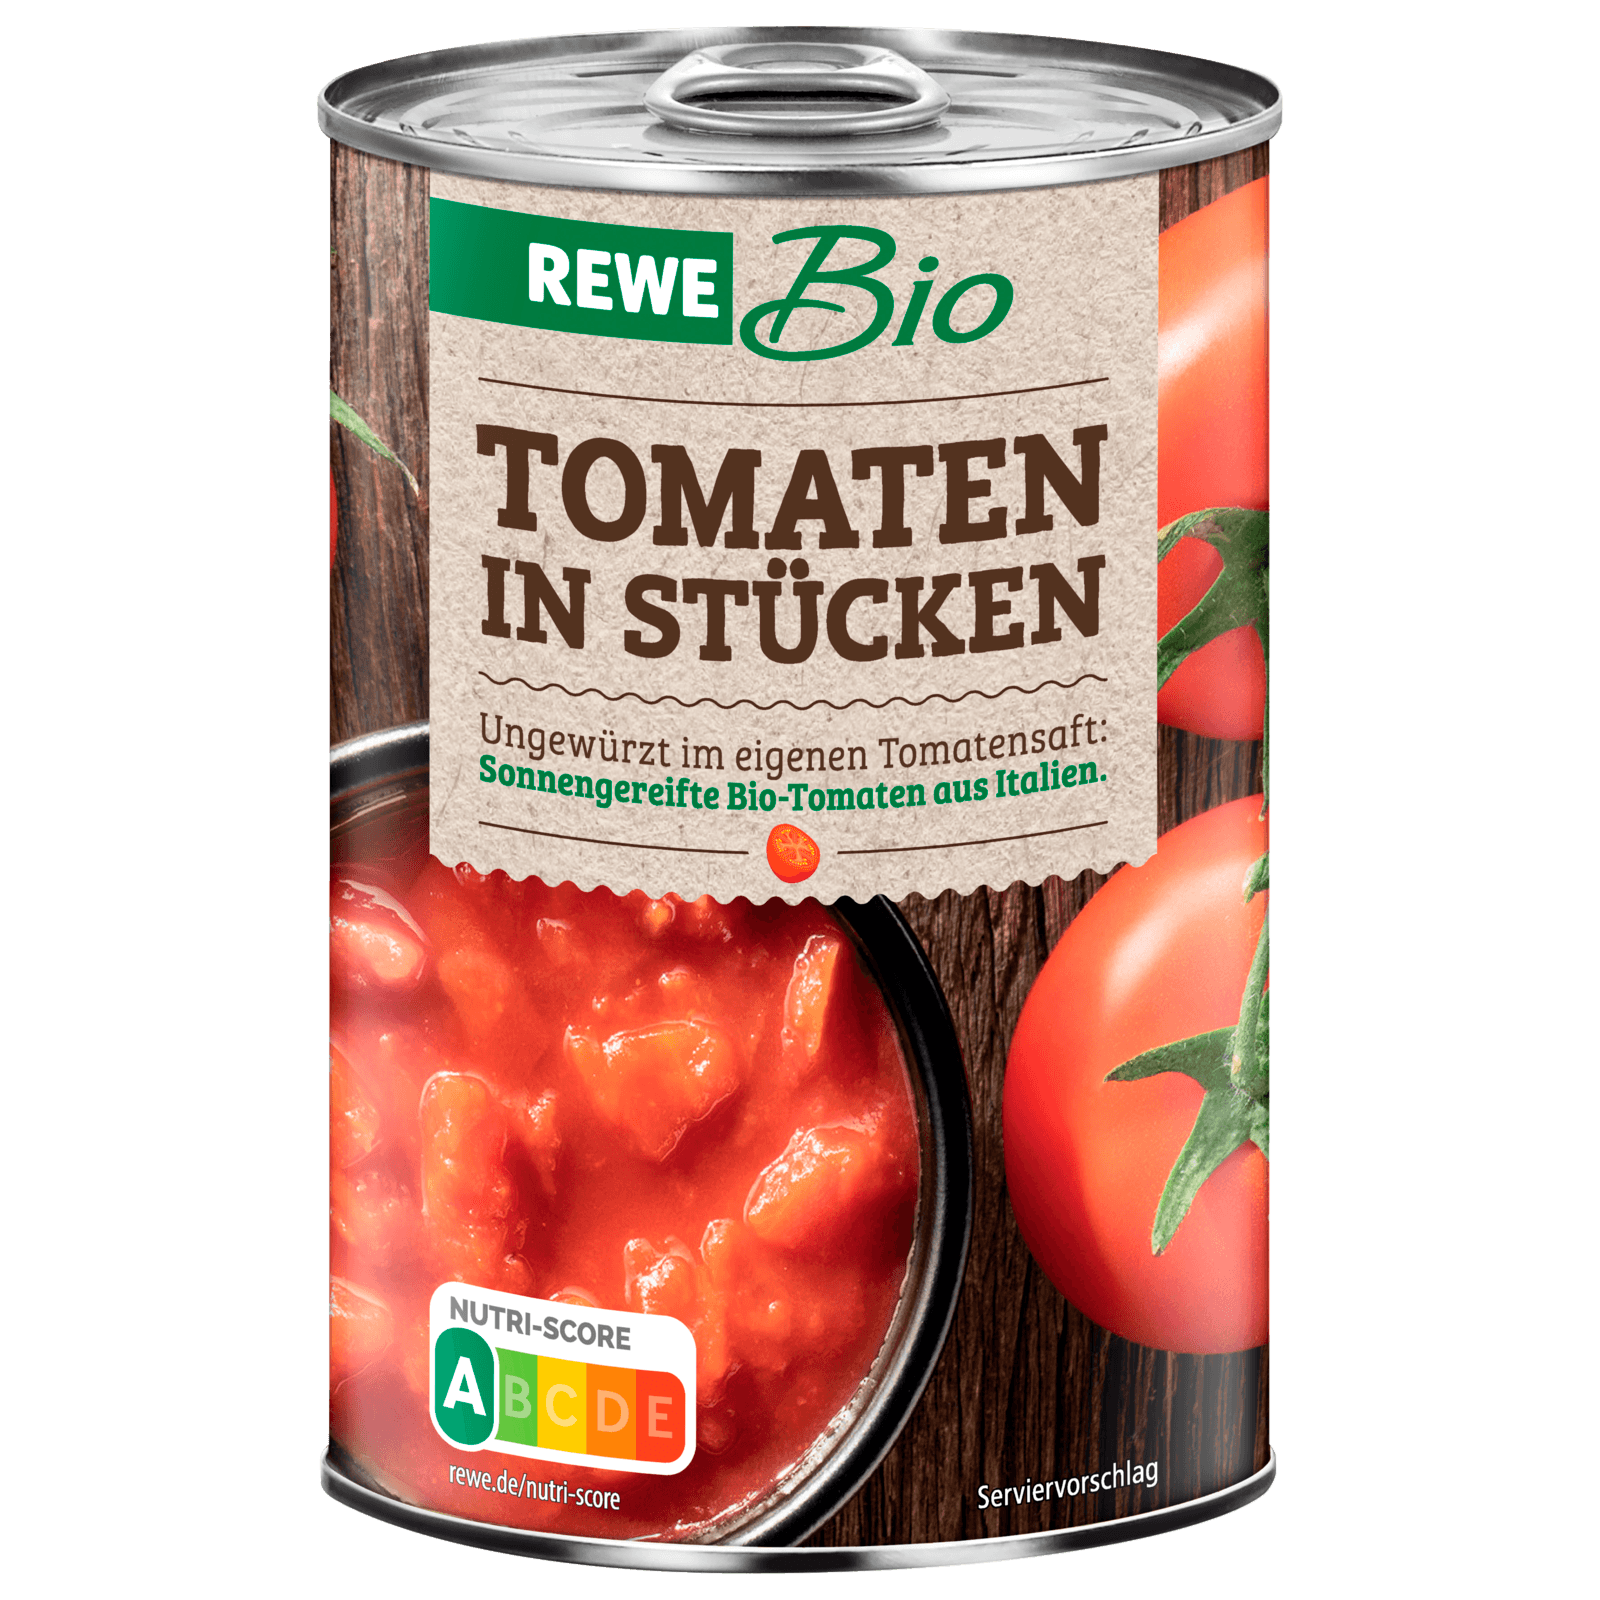 REWE Bio Tomaten in Stücken 400g